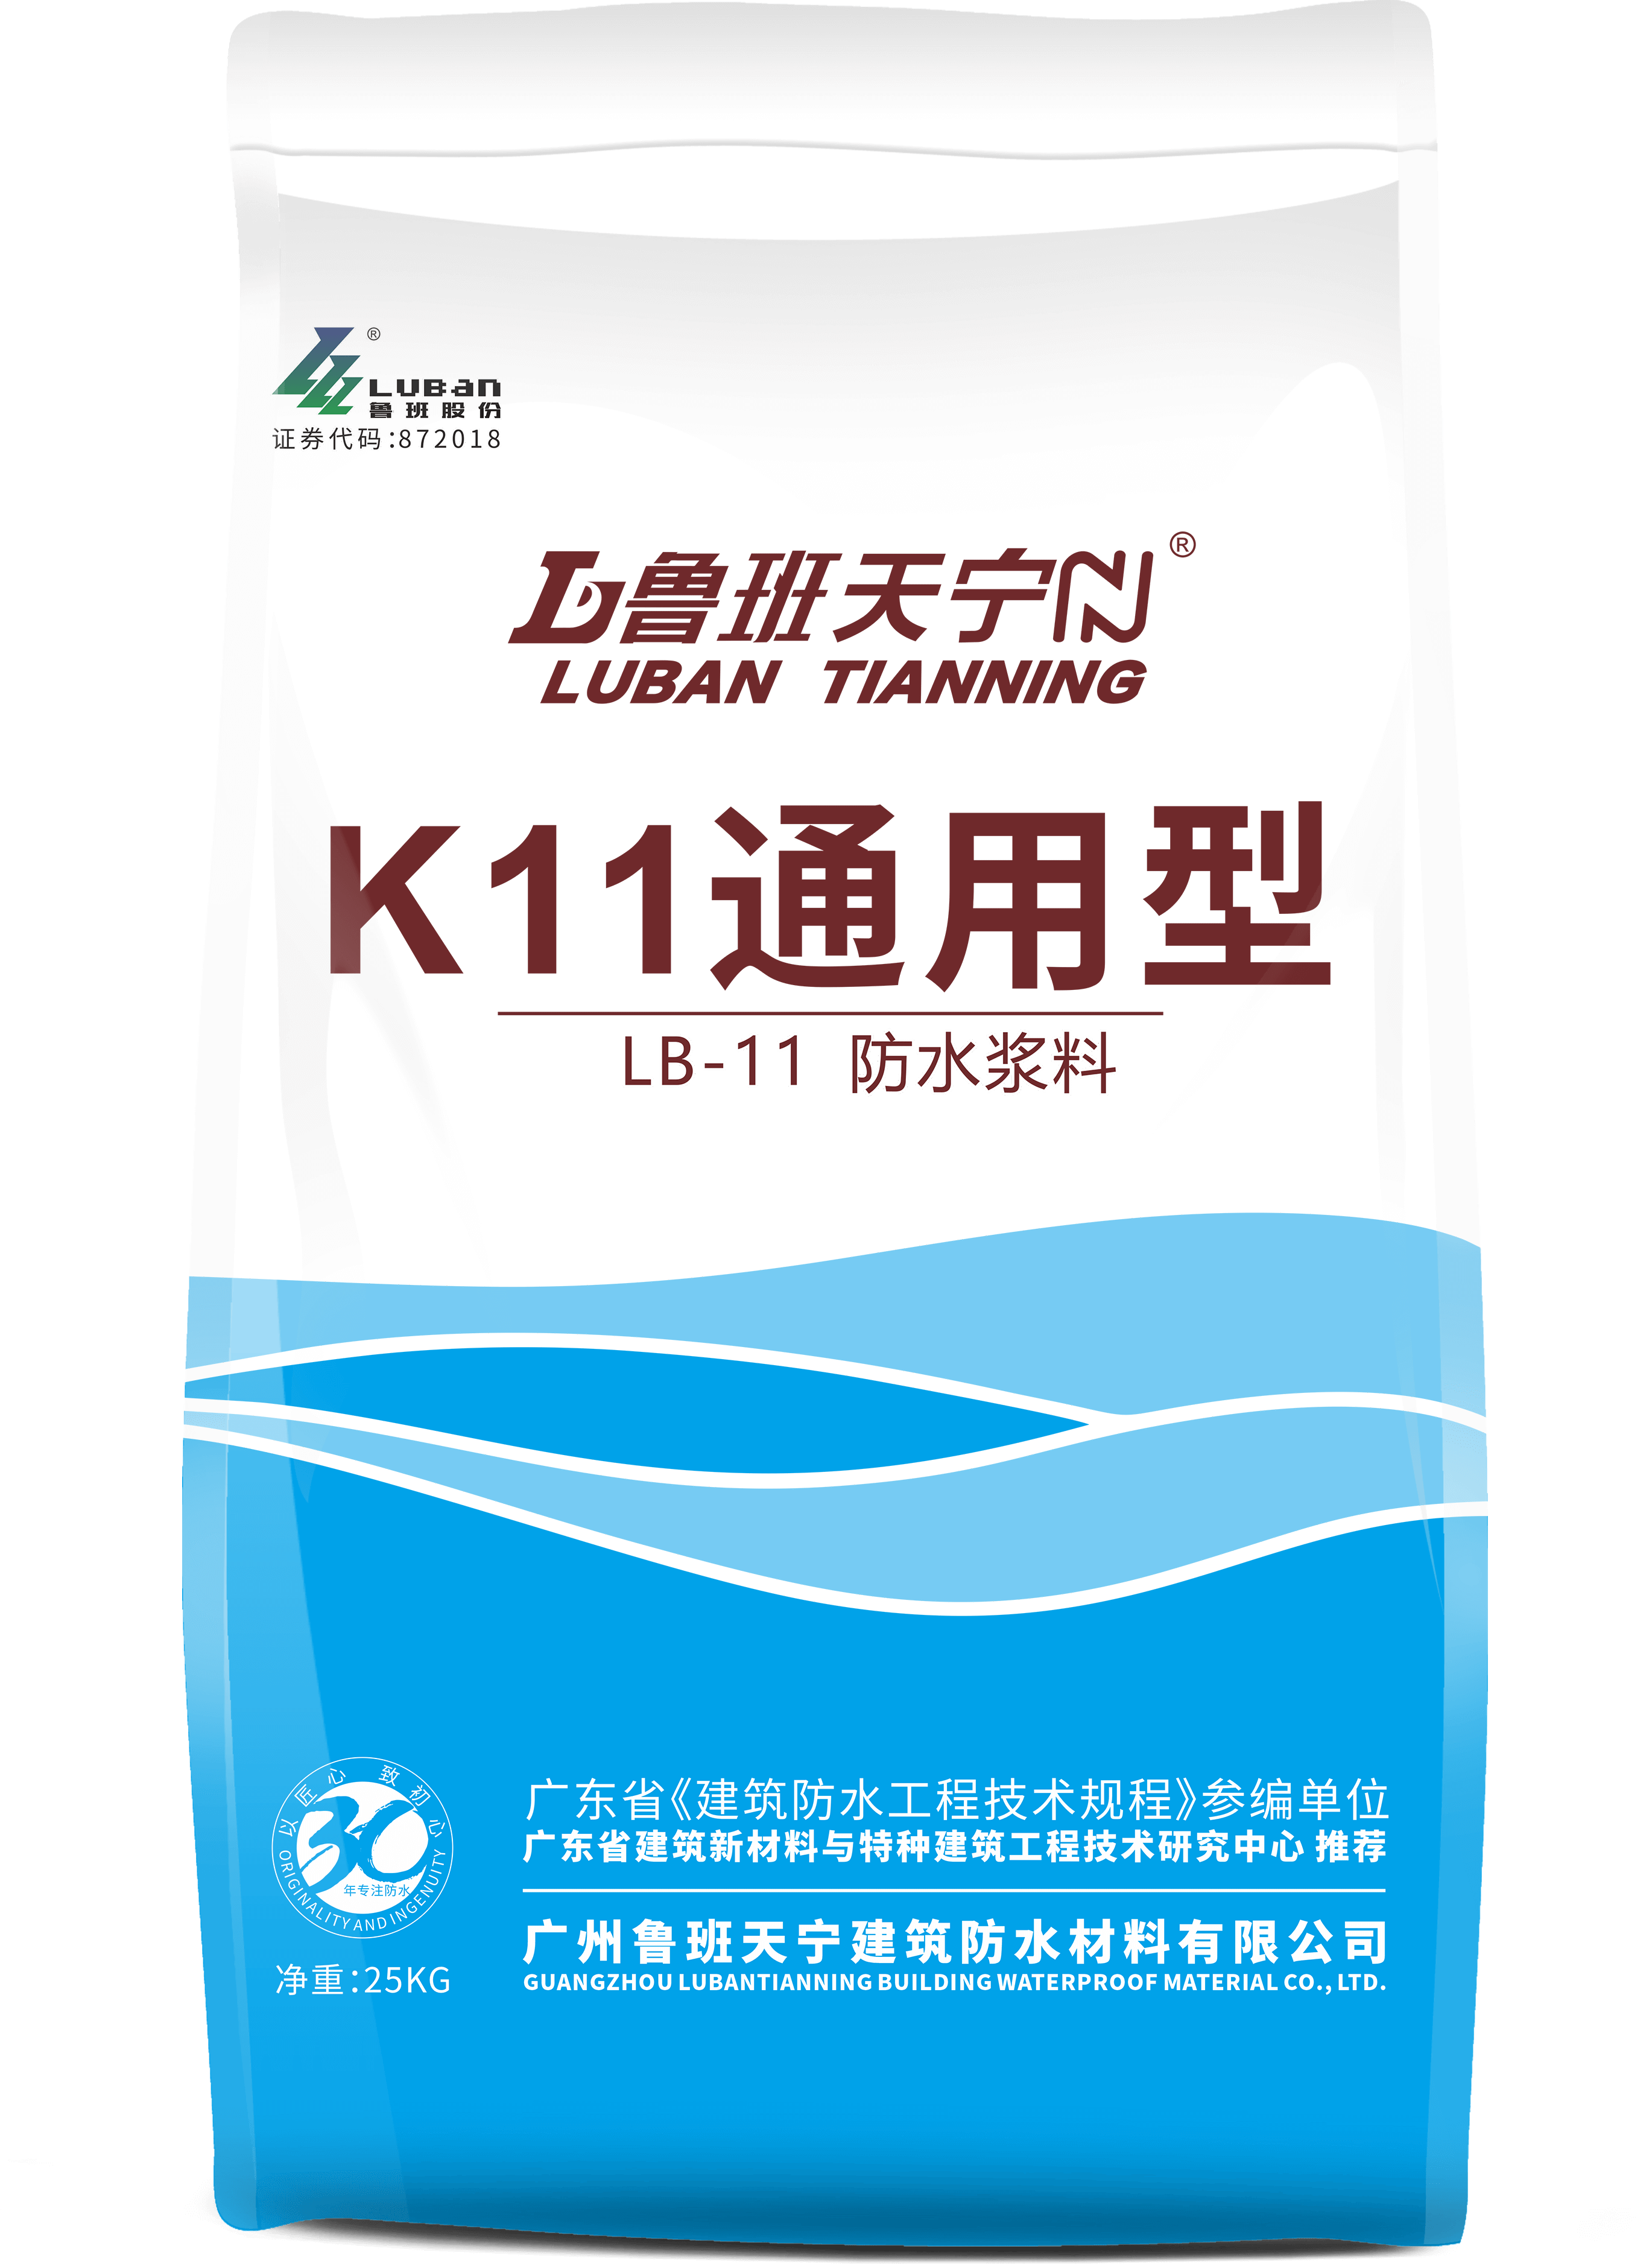 LB-11  K11通用型防水涂料